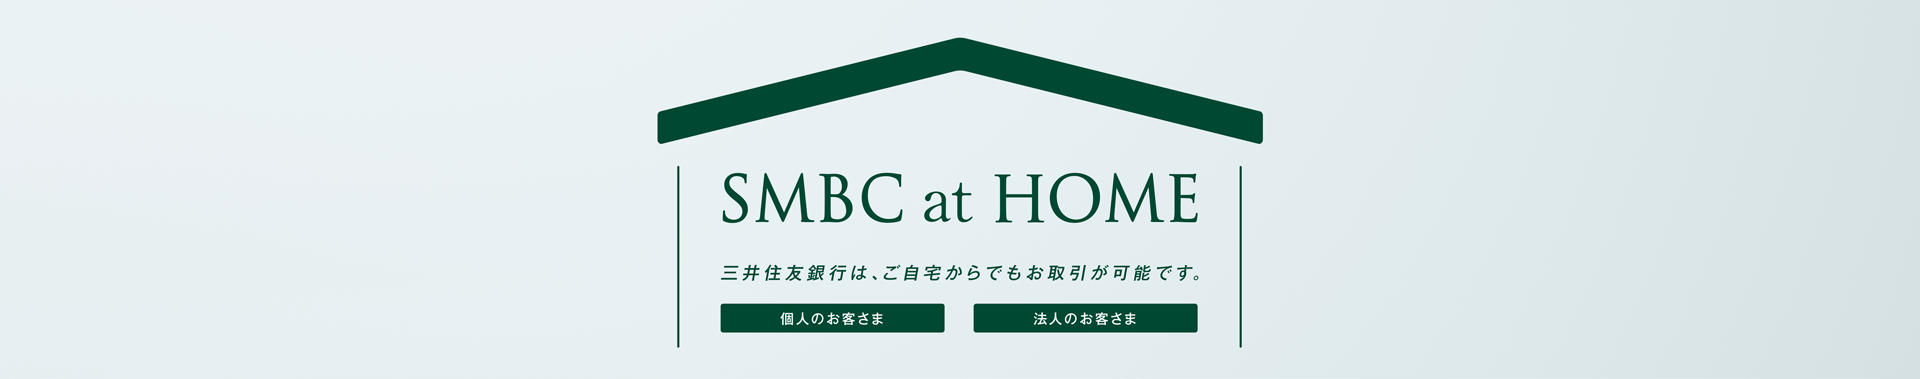 SMBC at HOME OZFśAł\łB